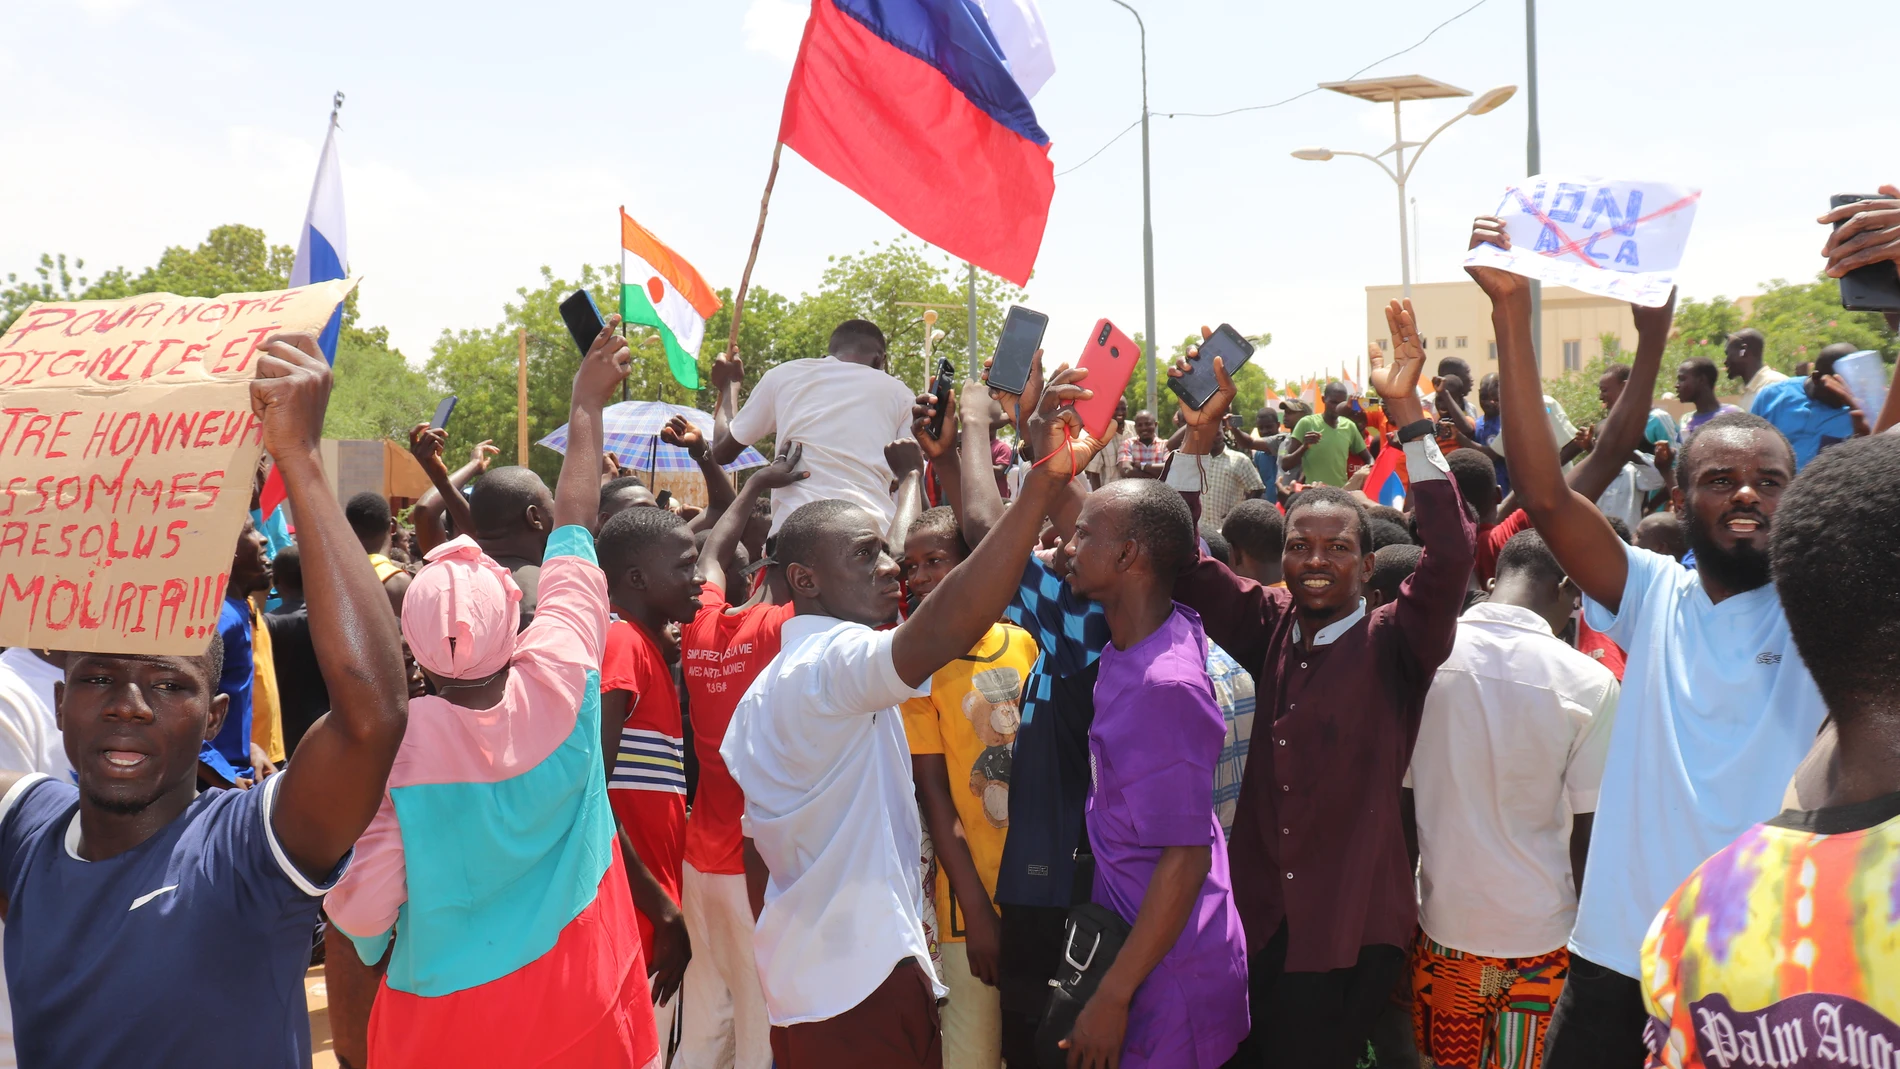 Níger.- El Kremlin afirma estar "preocupado" por la situación en Níger, más aún tras la reciente cumbre Rusia-África